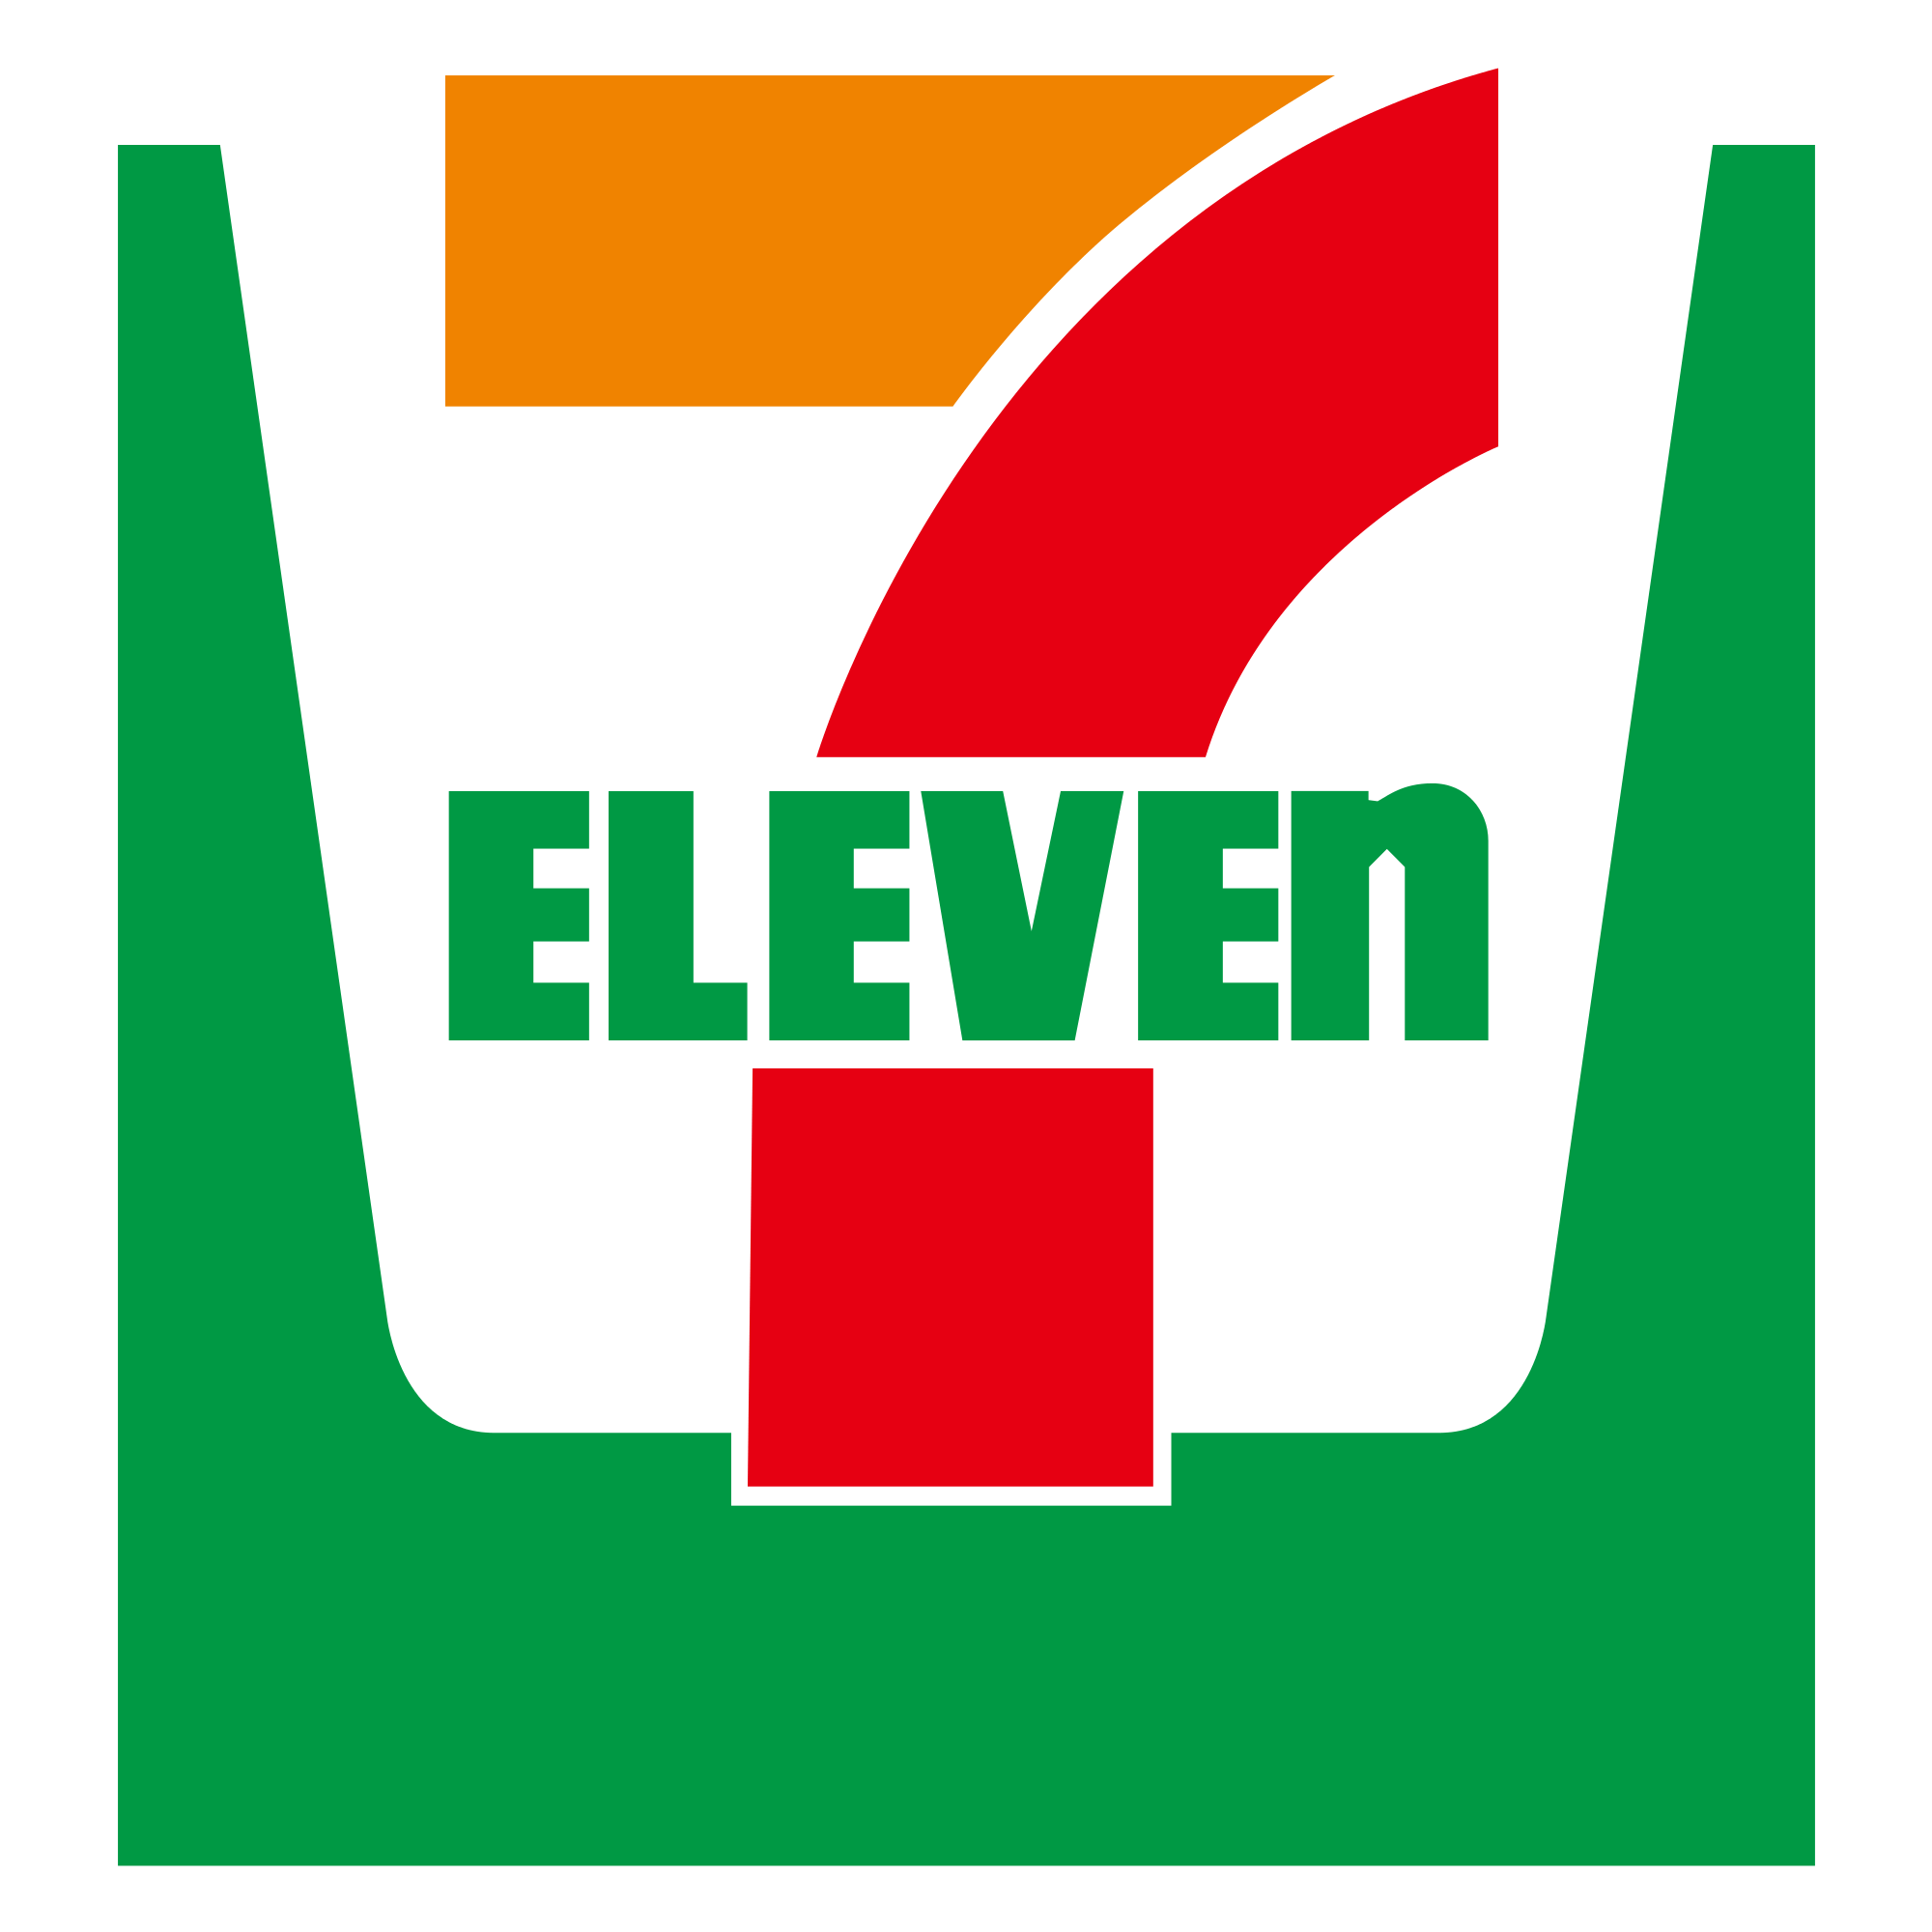 711 Logo - File:Seven eleven logo.svg - Wikimedia Commons